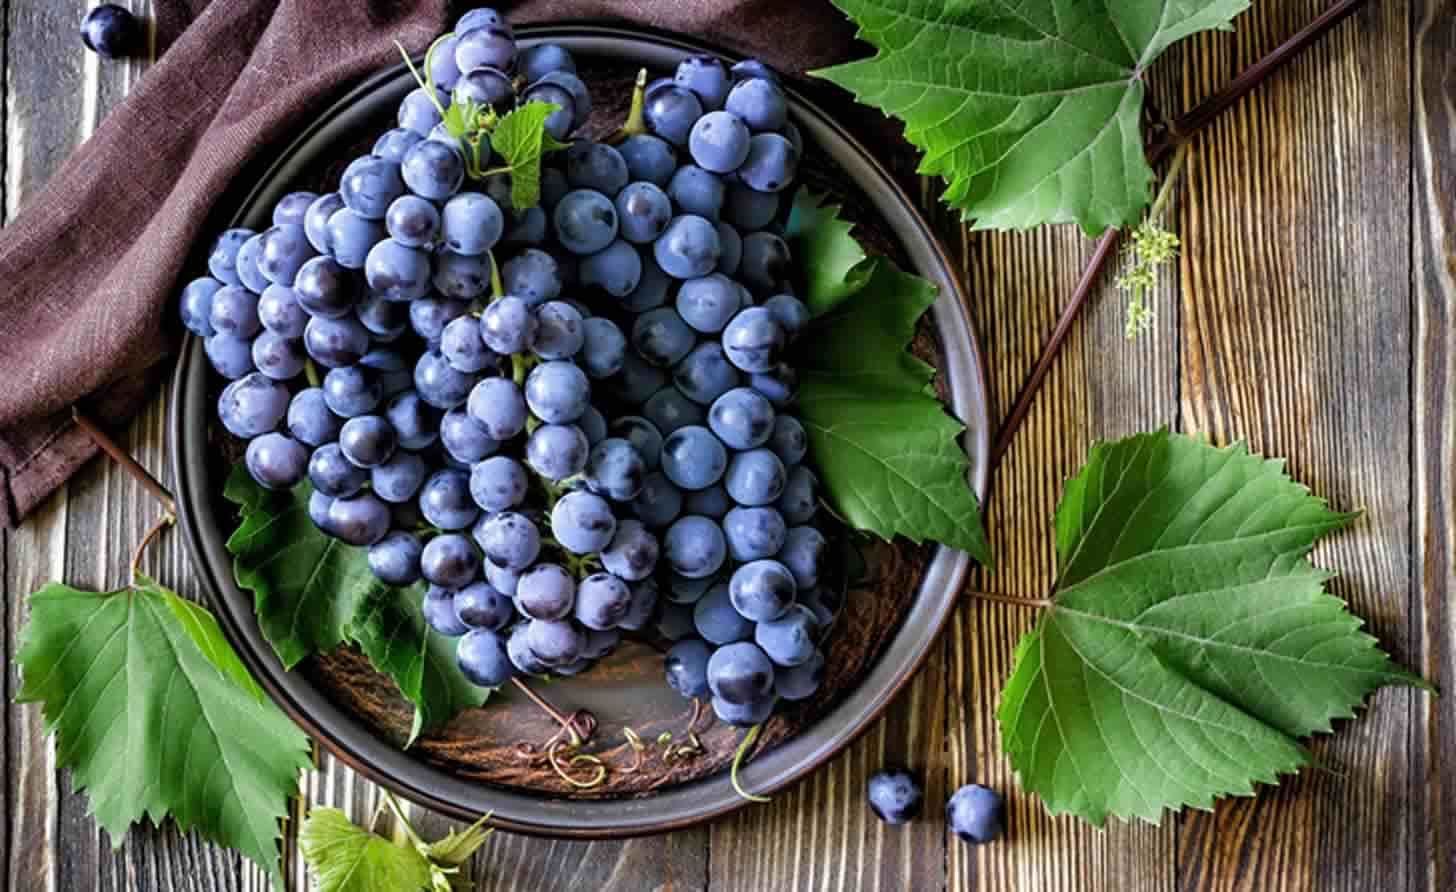 Ученые обнаружили в винограде ресвератрол: что это за вещество, и как влияет на организм